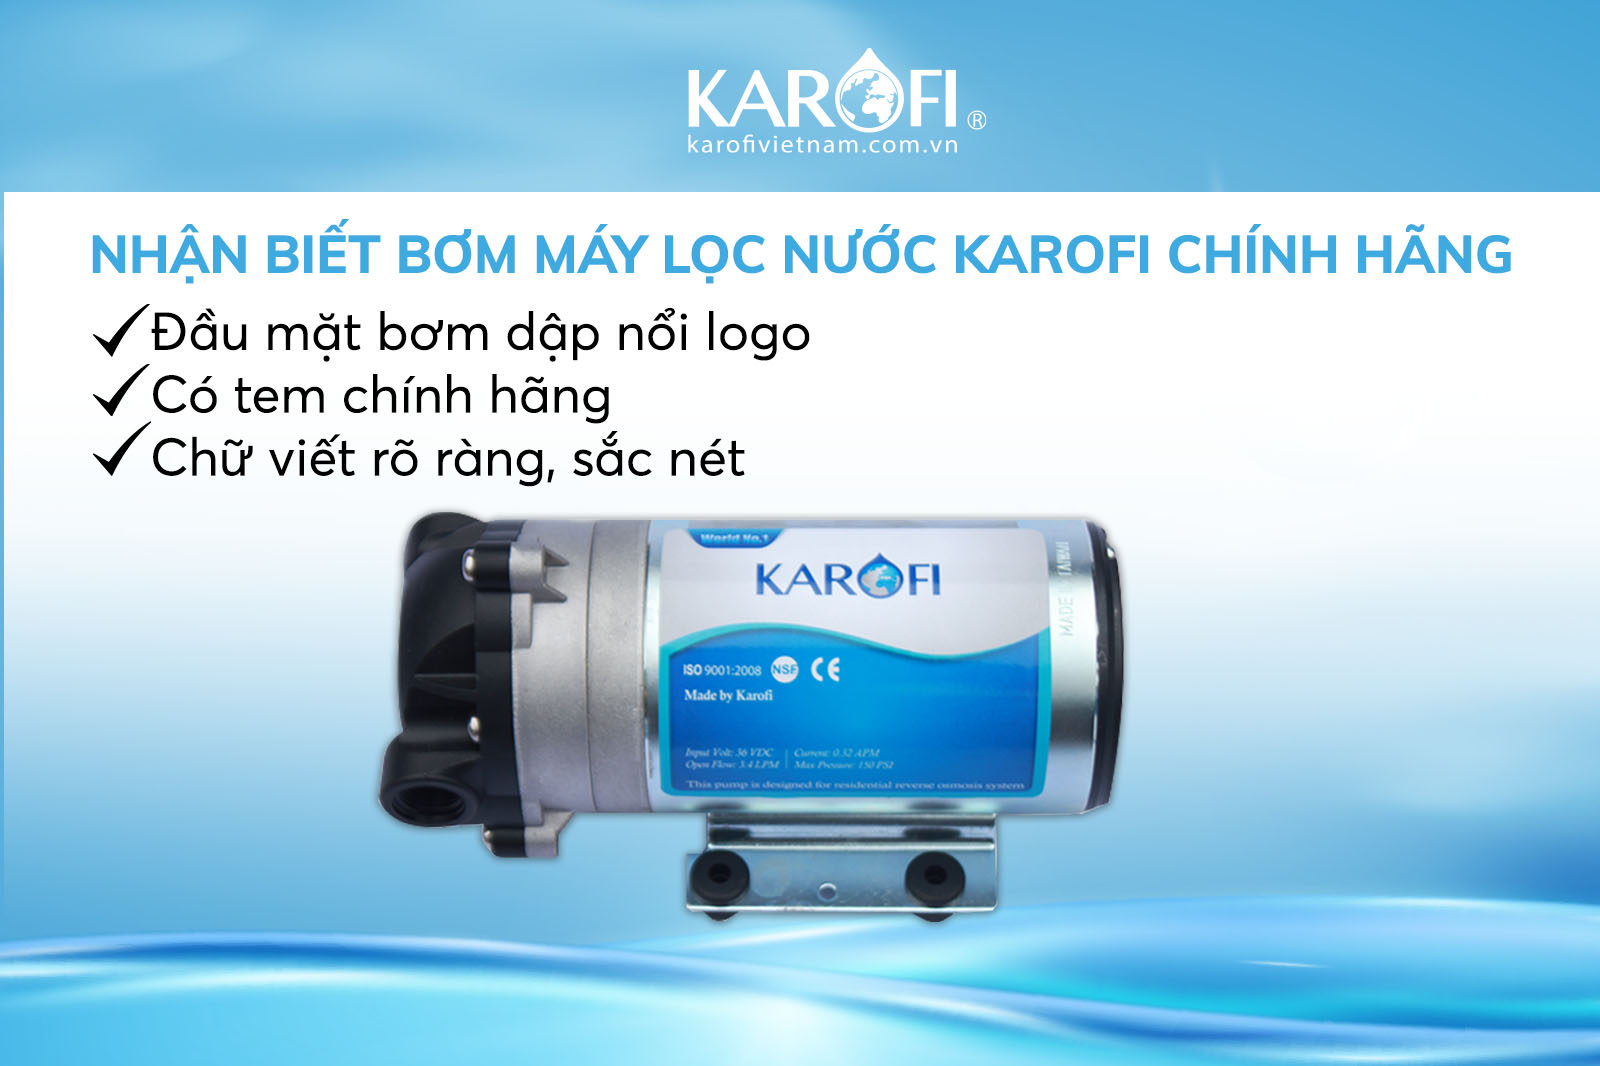 Nhận biết bơm máy lọc nước Karofi chính hãng